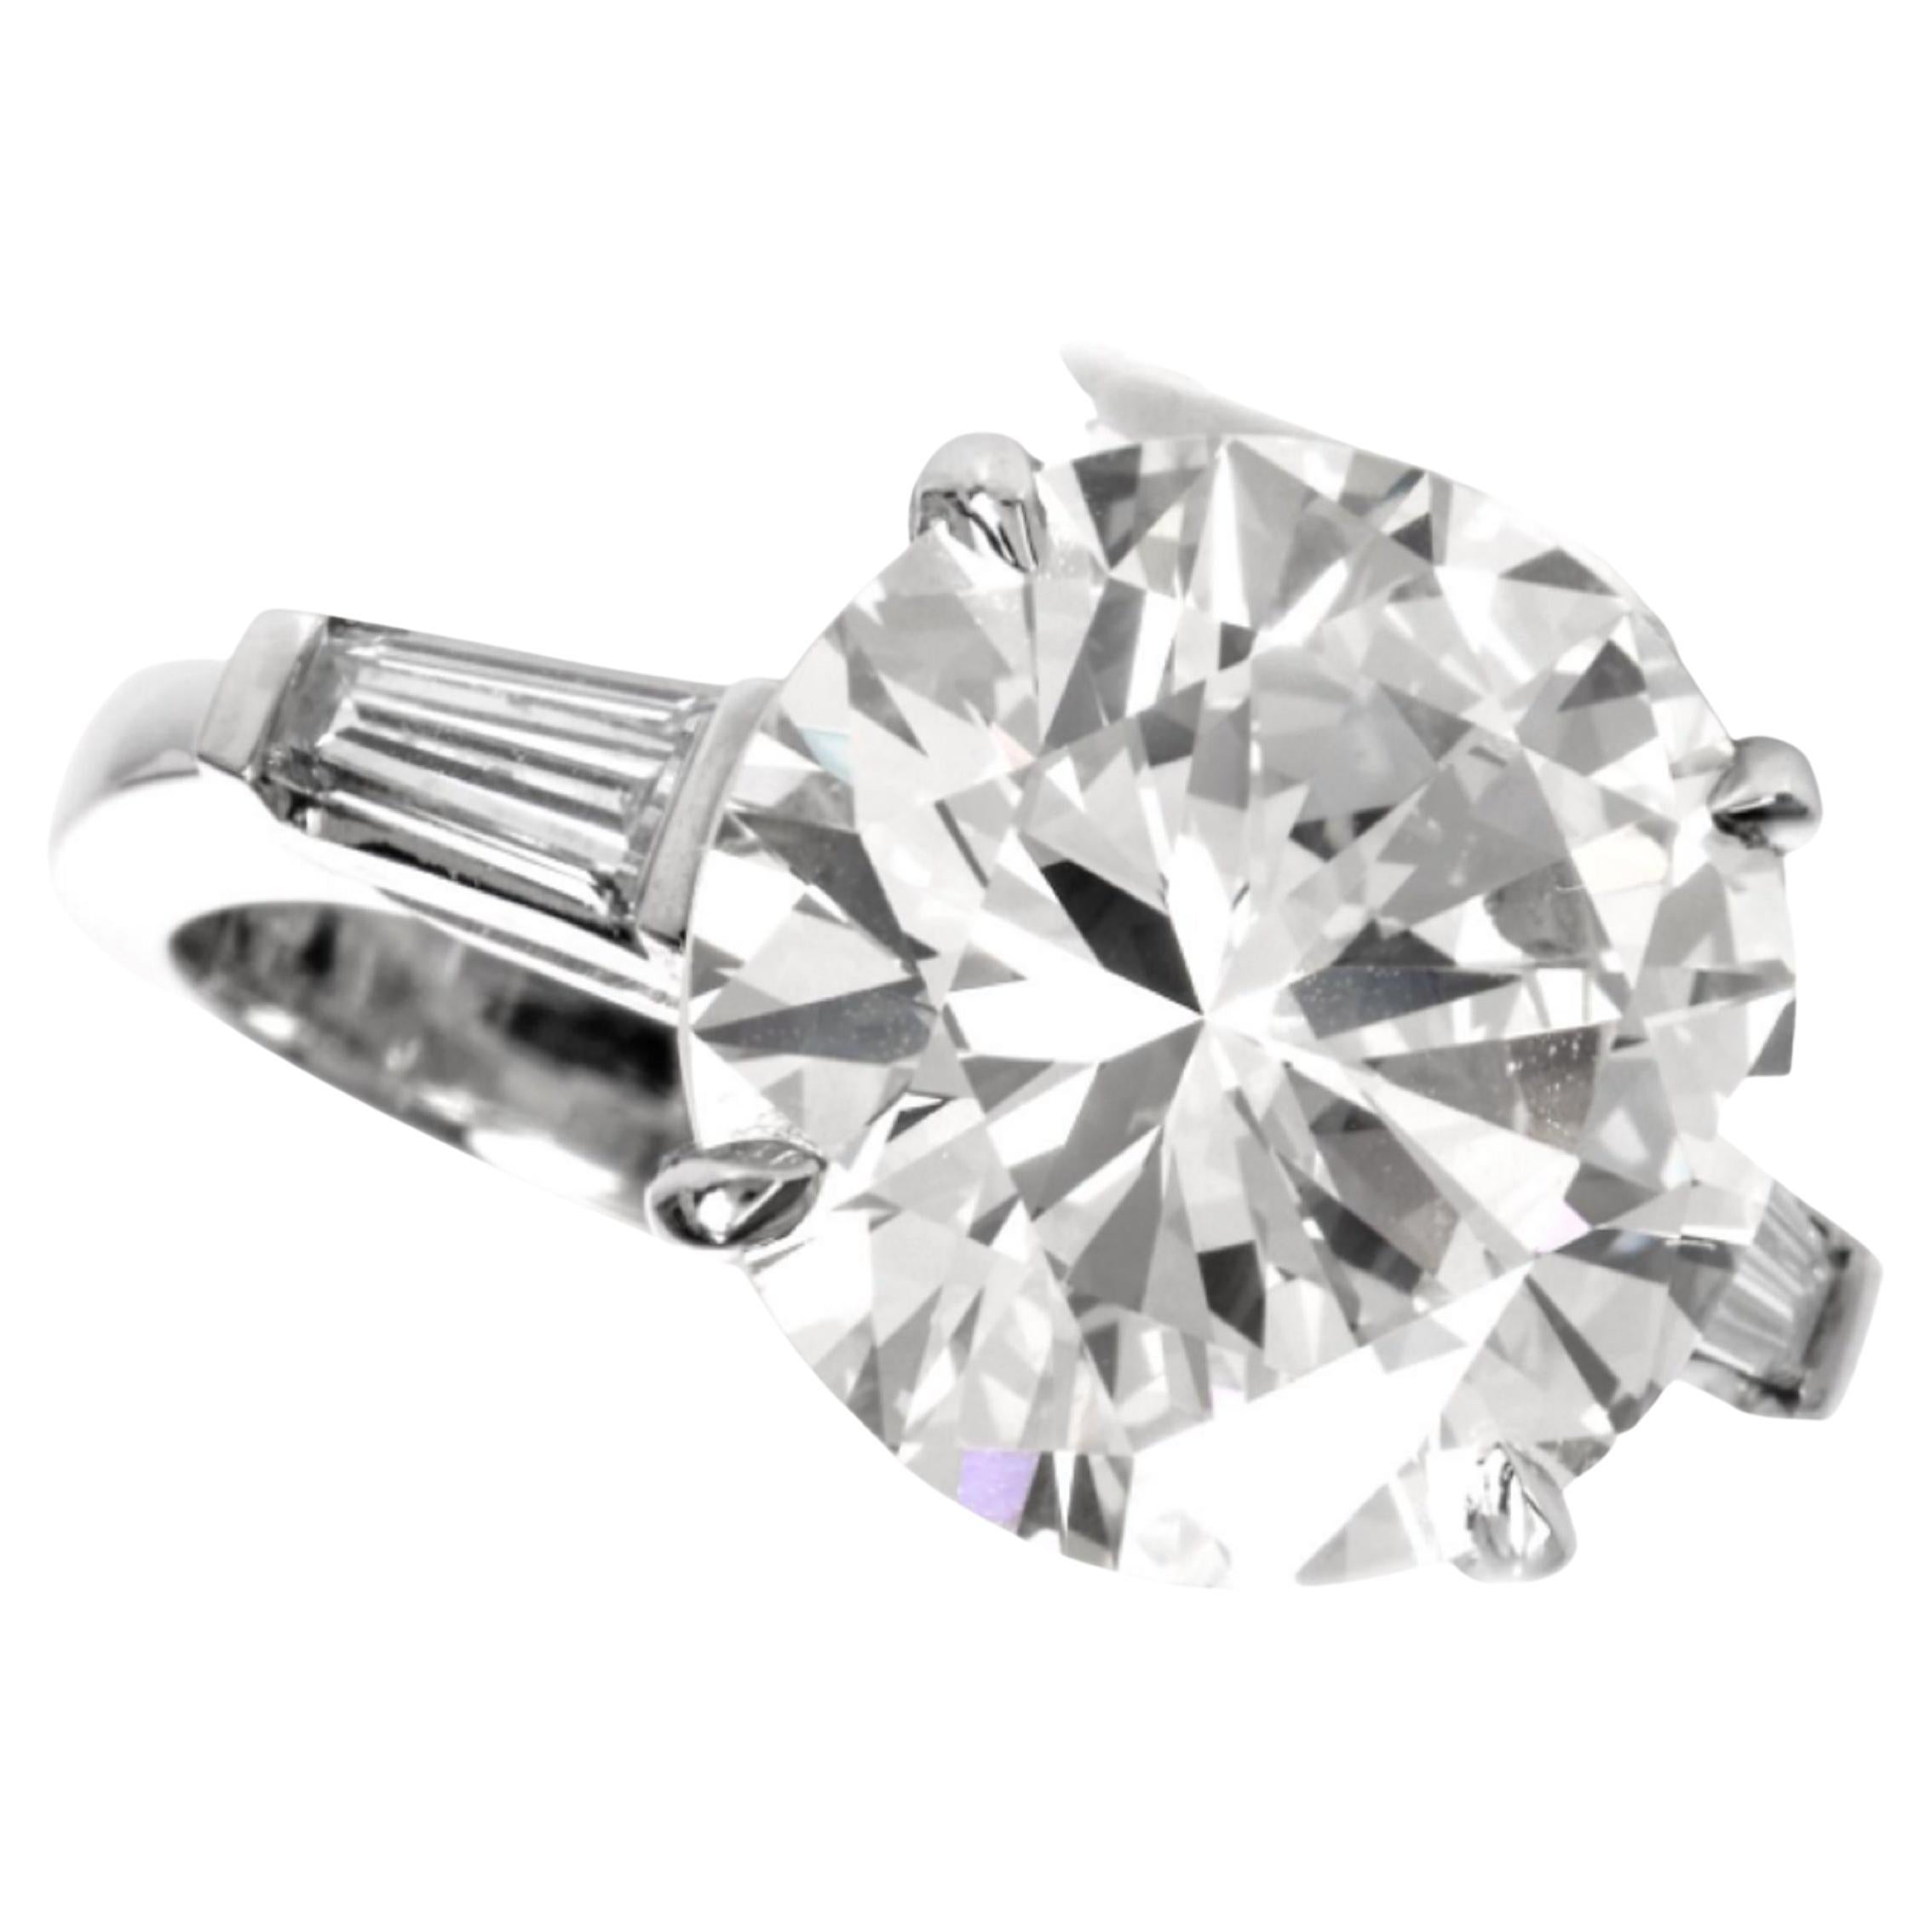 GIA-zertifizierter 3 Karat runder Diamantring mit Brillantschliff und spitz zulaufendem Baguette-Ring